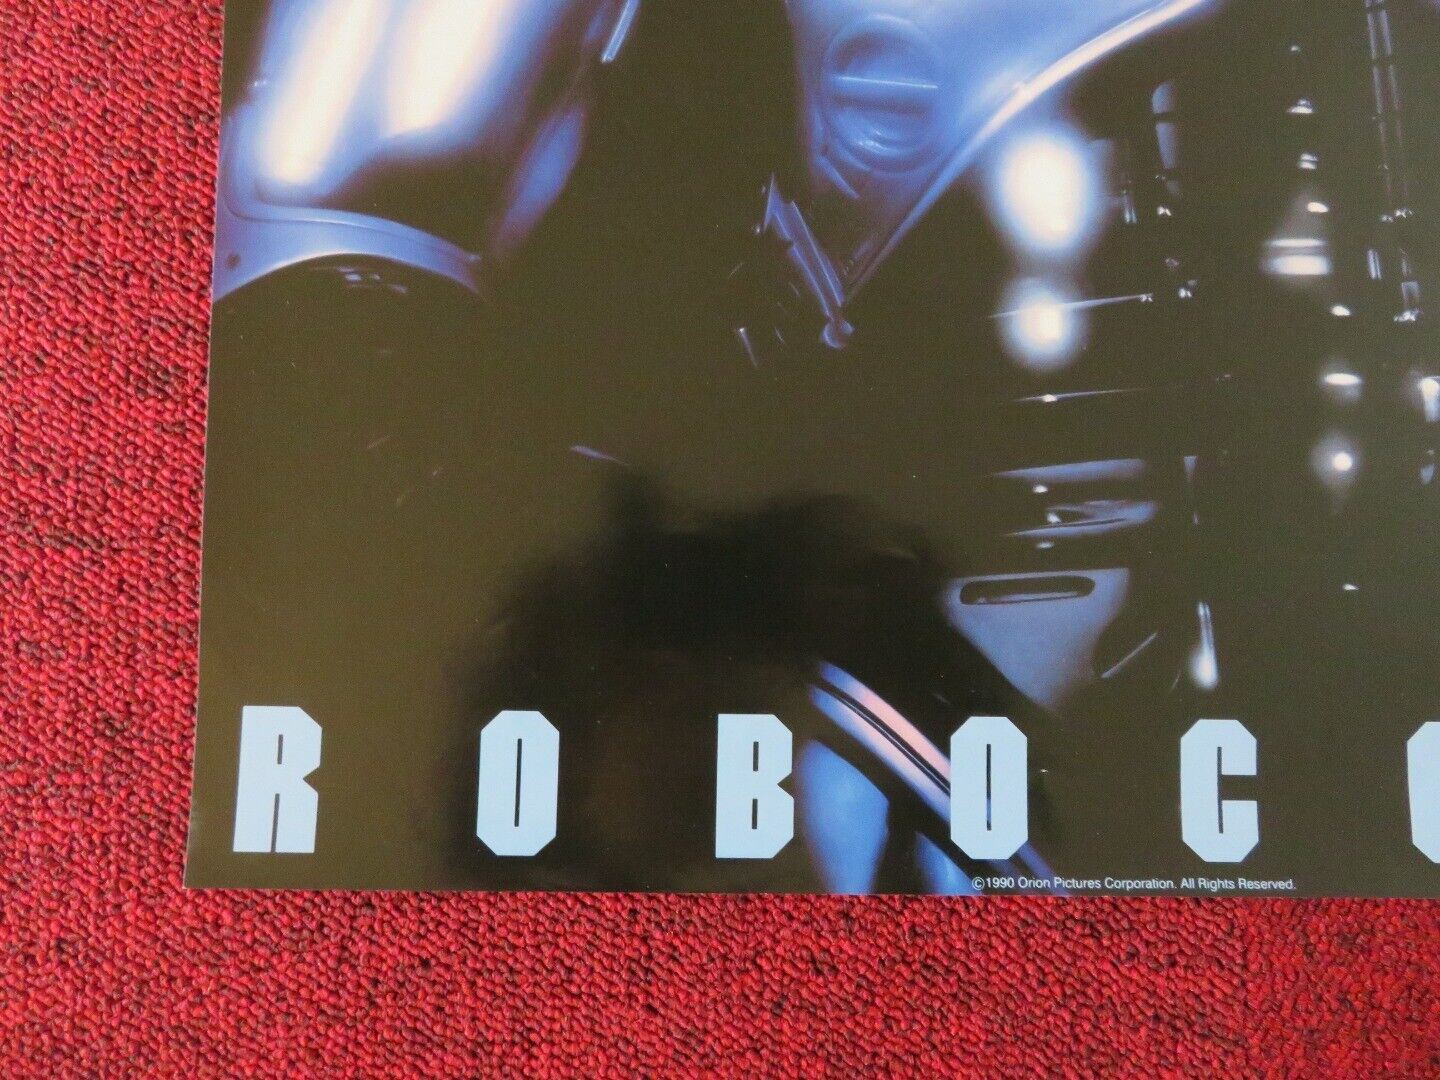 ROBOCOP 2 US ROLLED (20"x16") POSTER PETER WELLER 1990